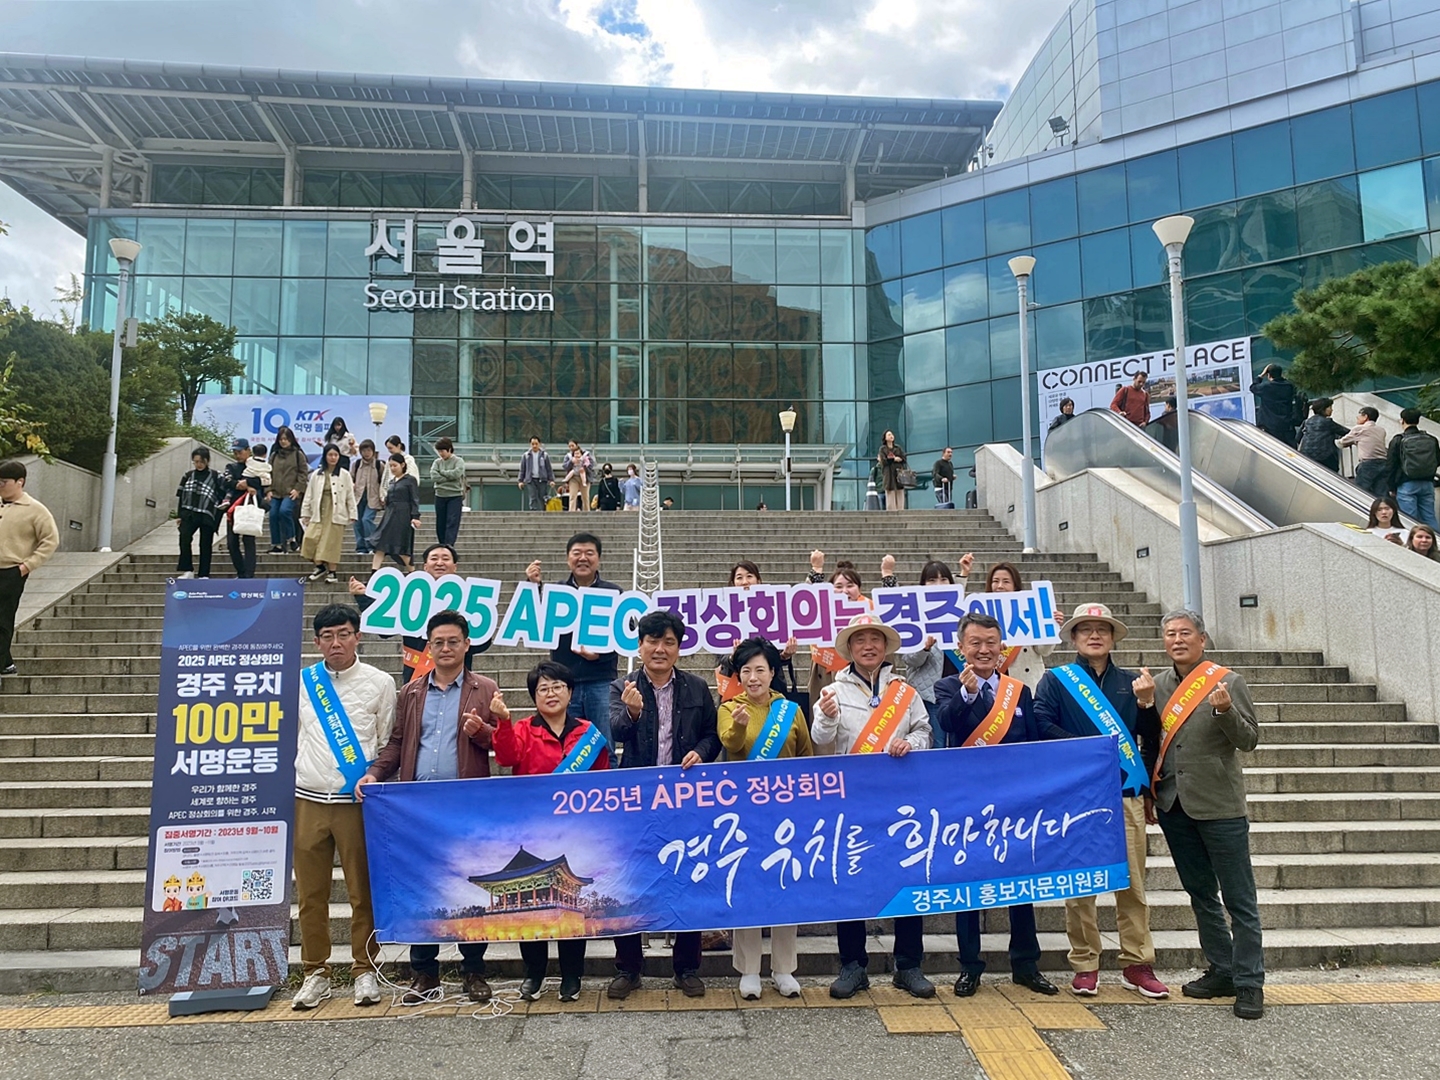 경주시 홍보자문위원회가 지난 27일 서울역에서 ‘2025 APEC 정상회의’ 경주유치를 위한 100만인 서명 운동을 펼치고 있다.